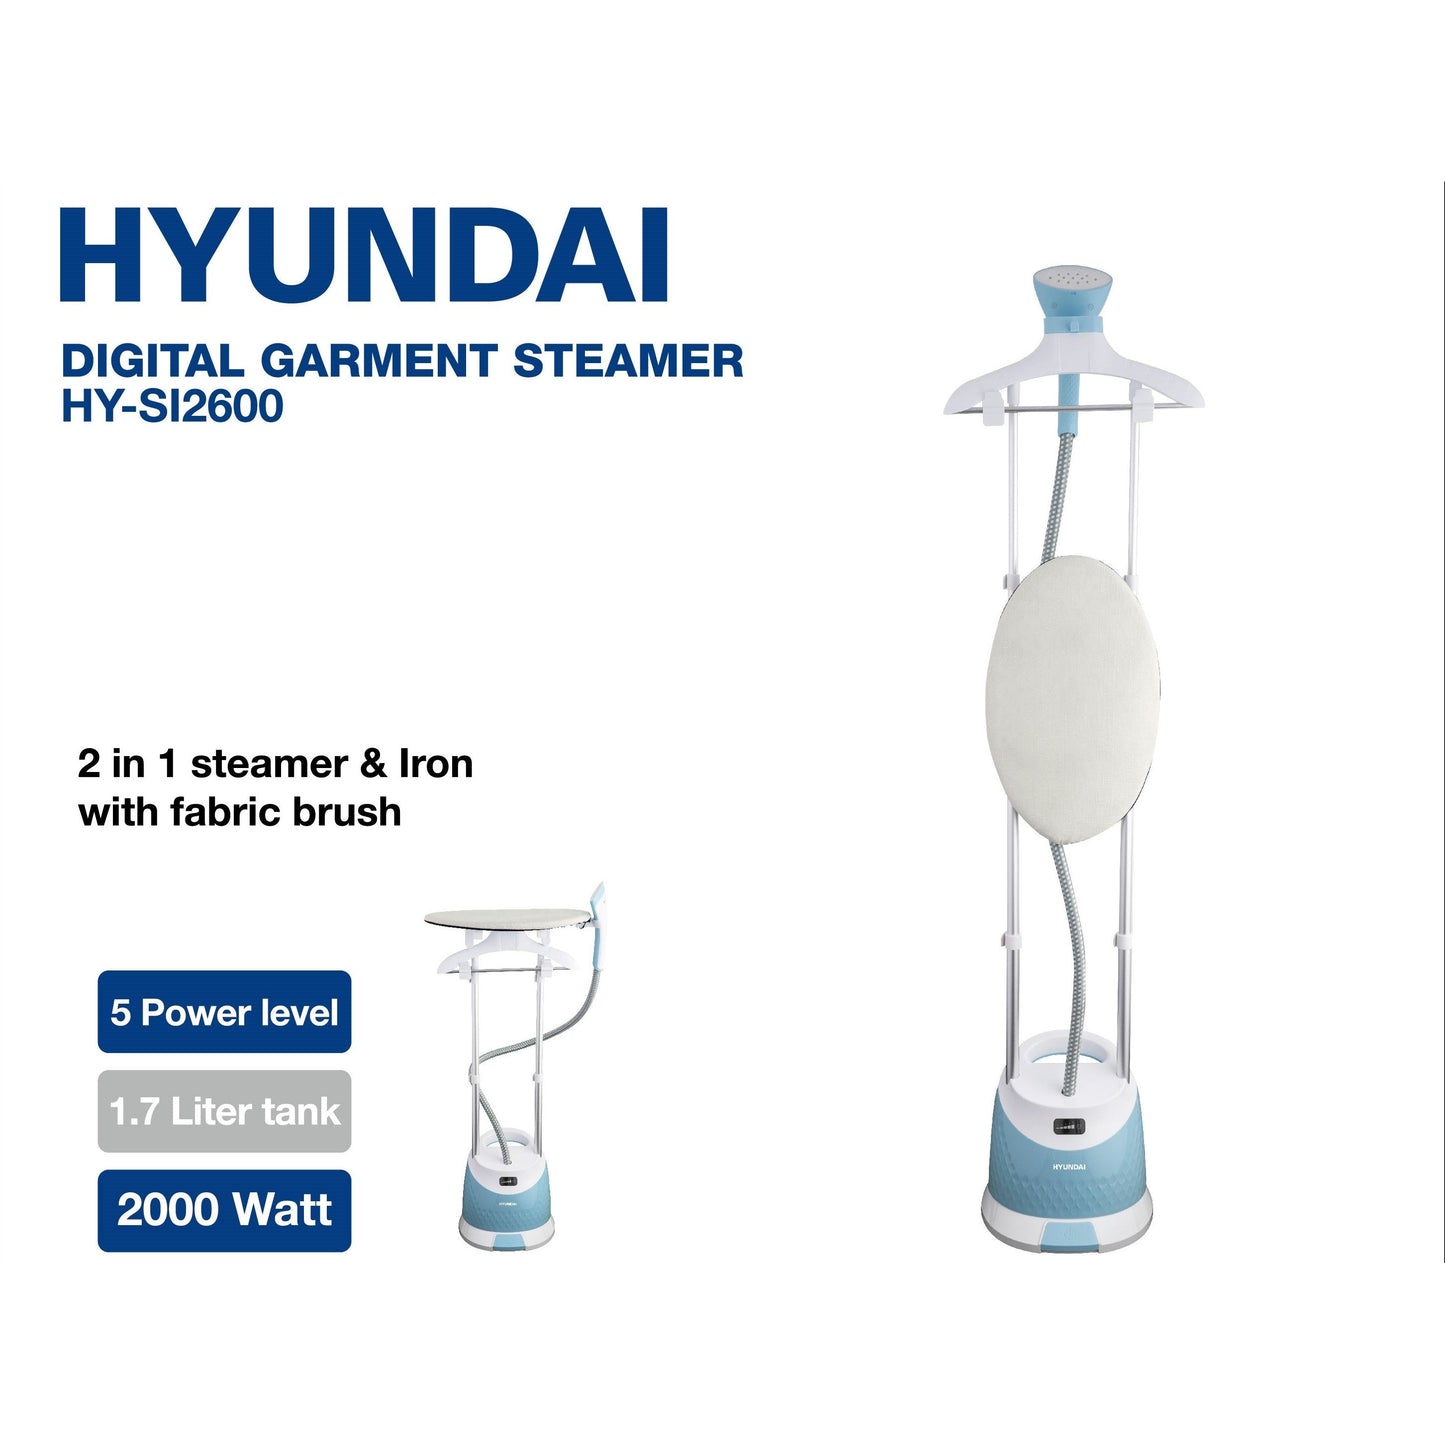 Hyundai 2000W Digital Garment Steamer HY-SI2600